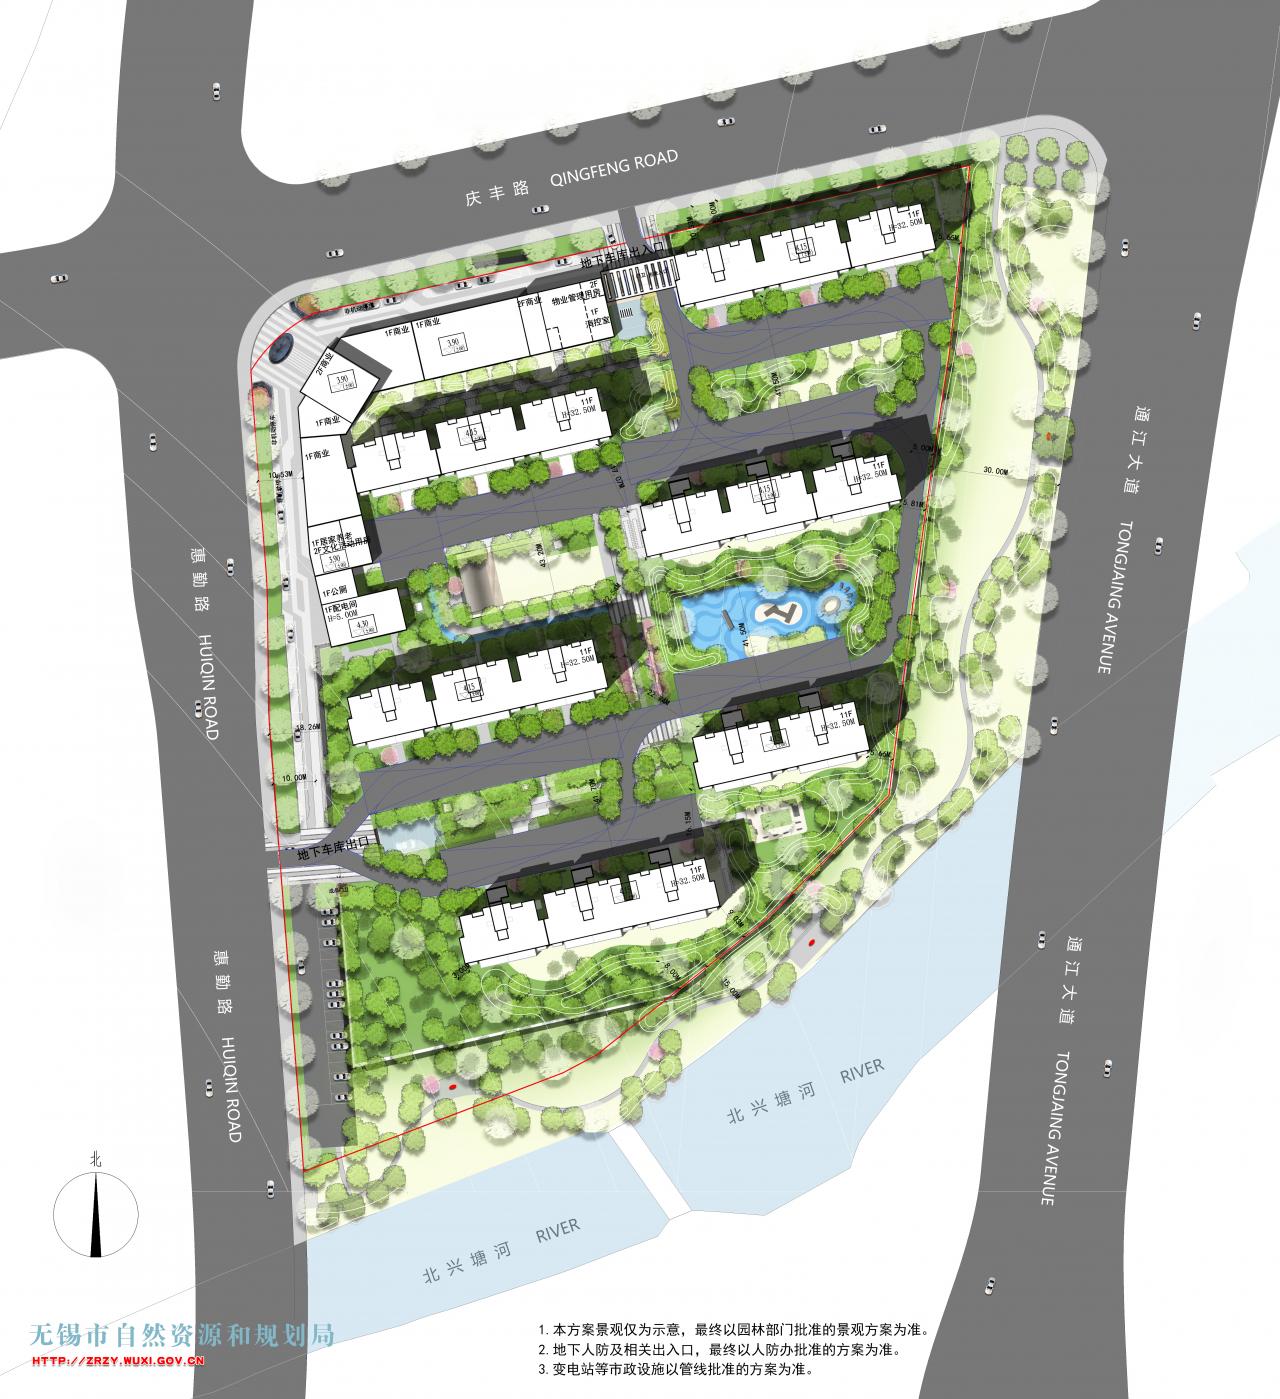 无锡市良明置业有限公司XDG-2019-36号地块建设项目规划设计方案批前公示